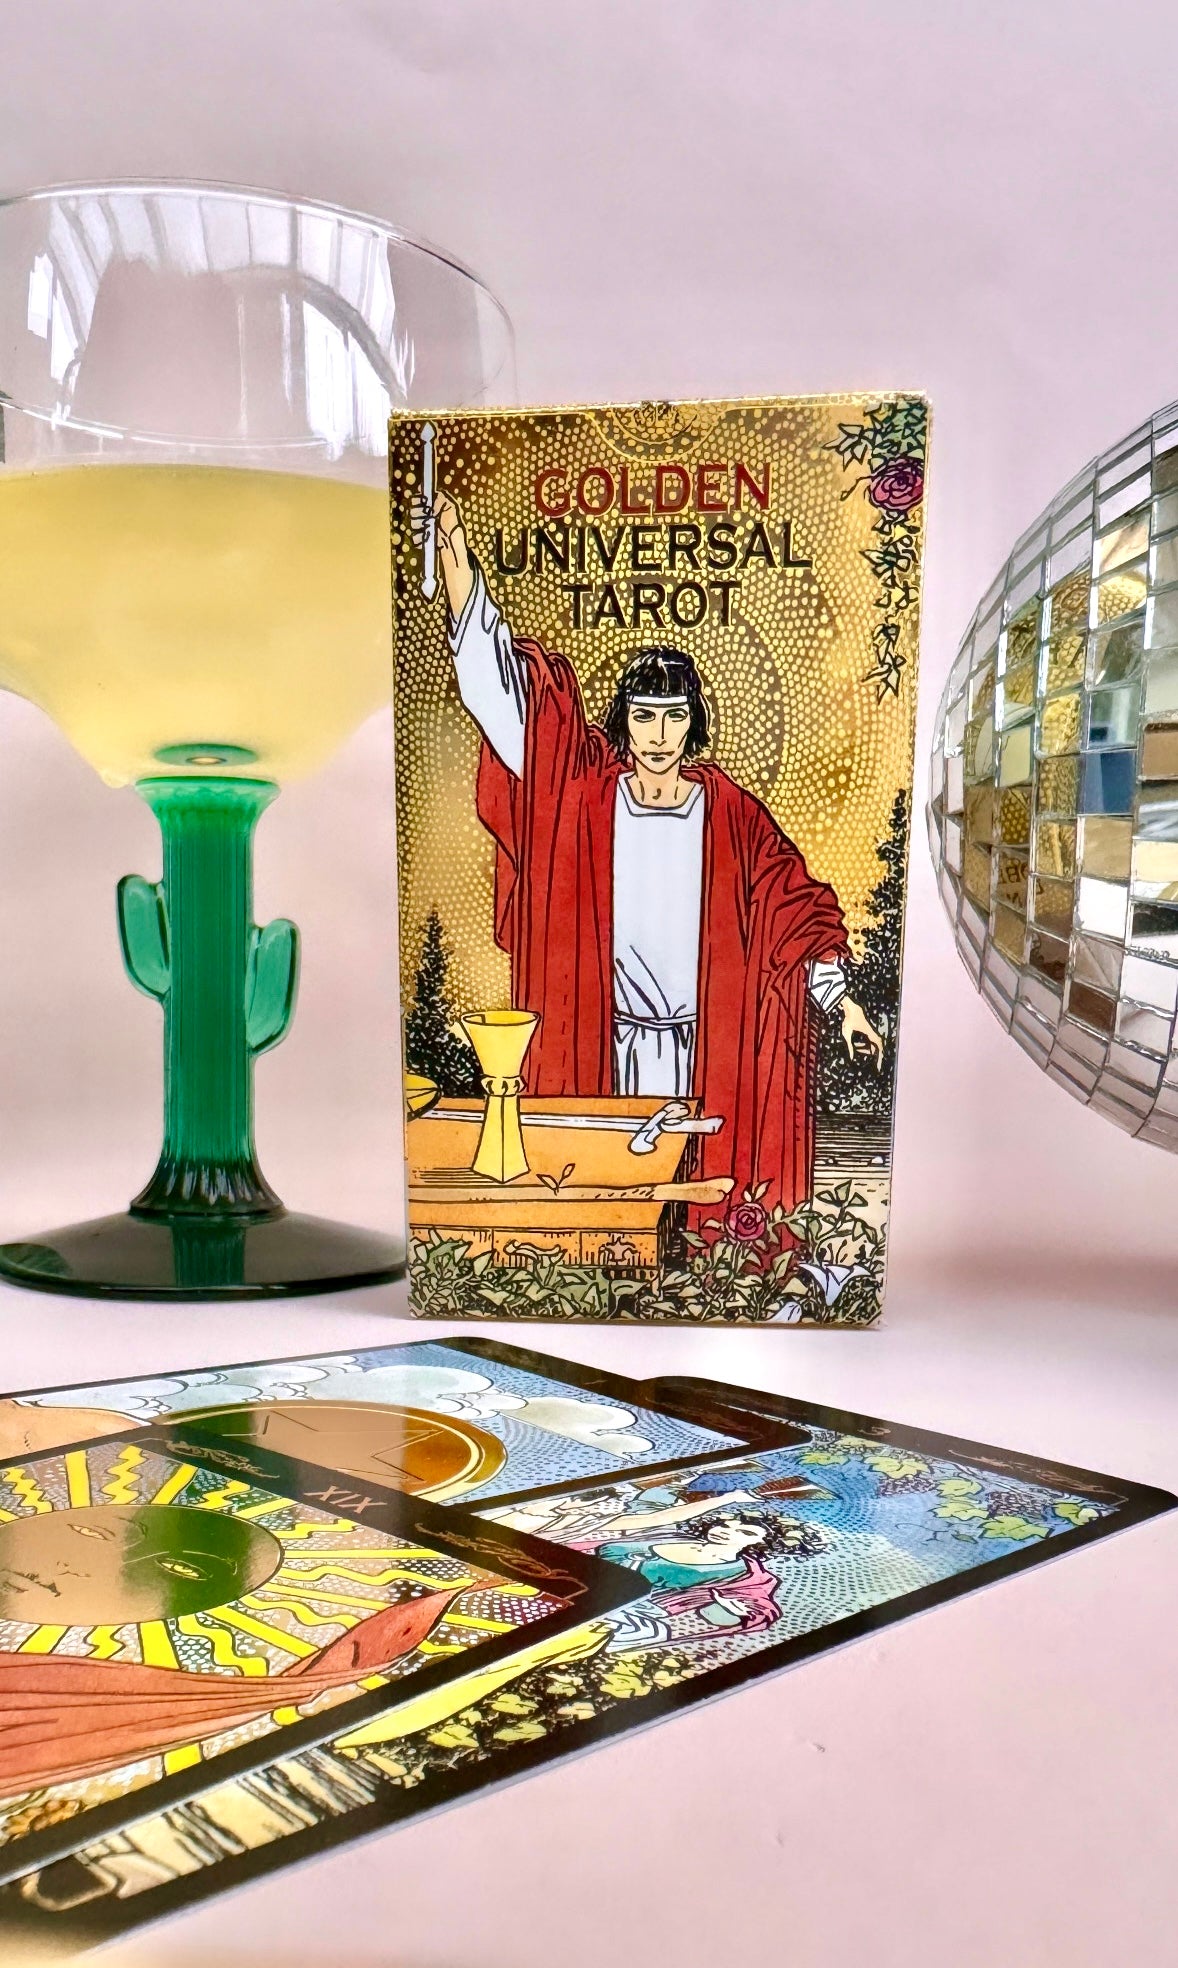 Golden Universal Tarot ✵ Klassiske Tarotkort Med Det Fineste Guldskær